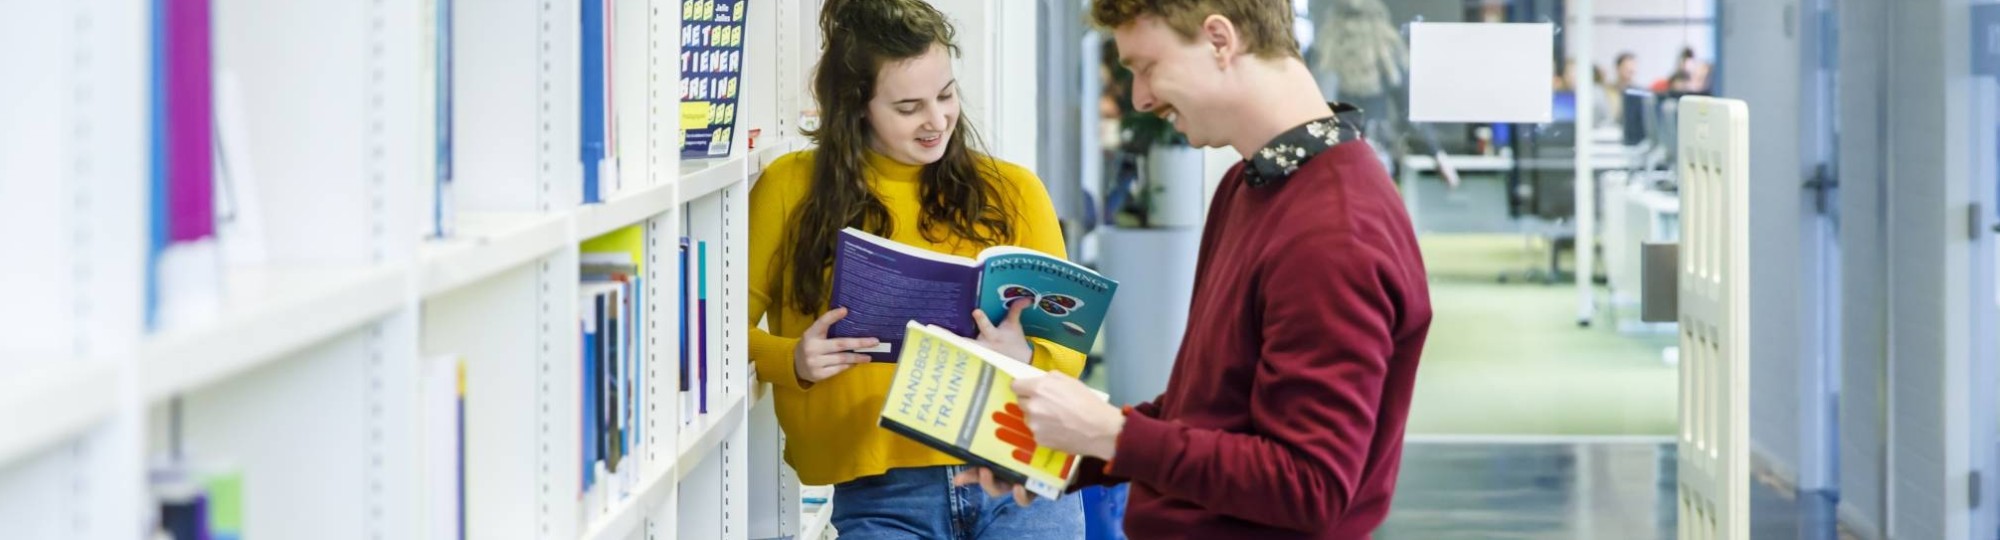 Twee studenten Pedagogiek lezen boek bibliotheek